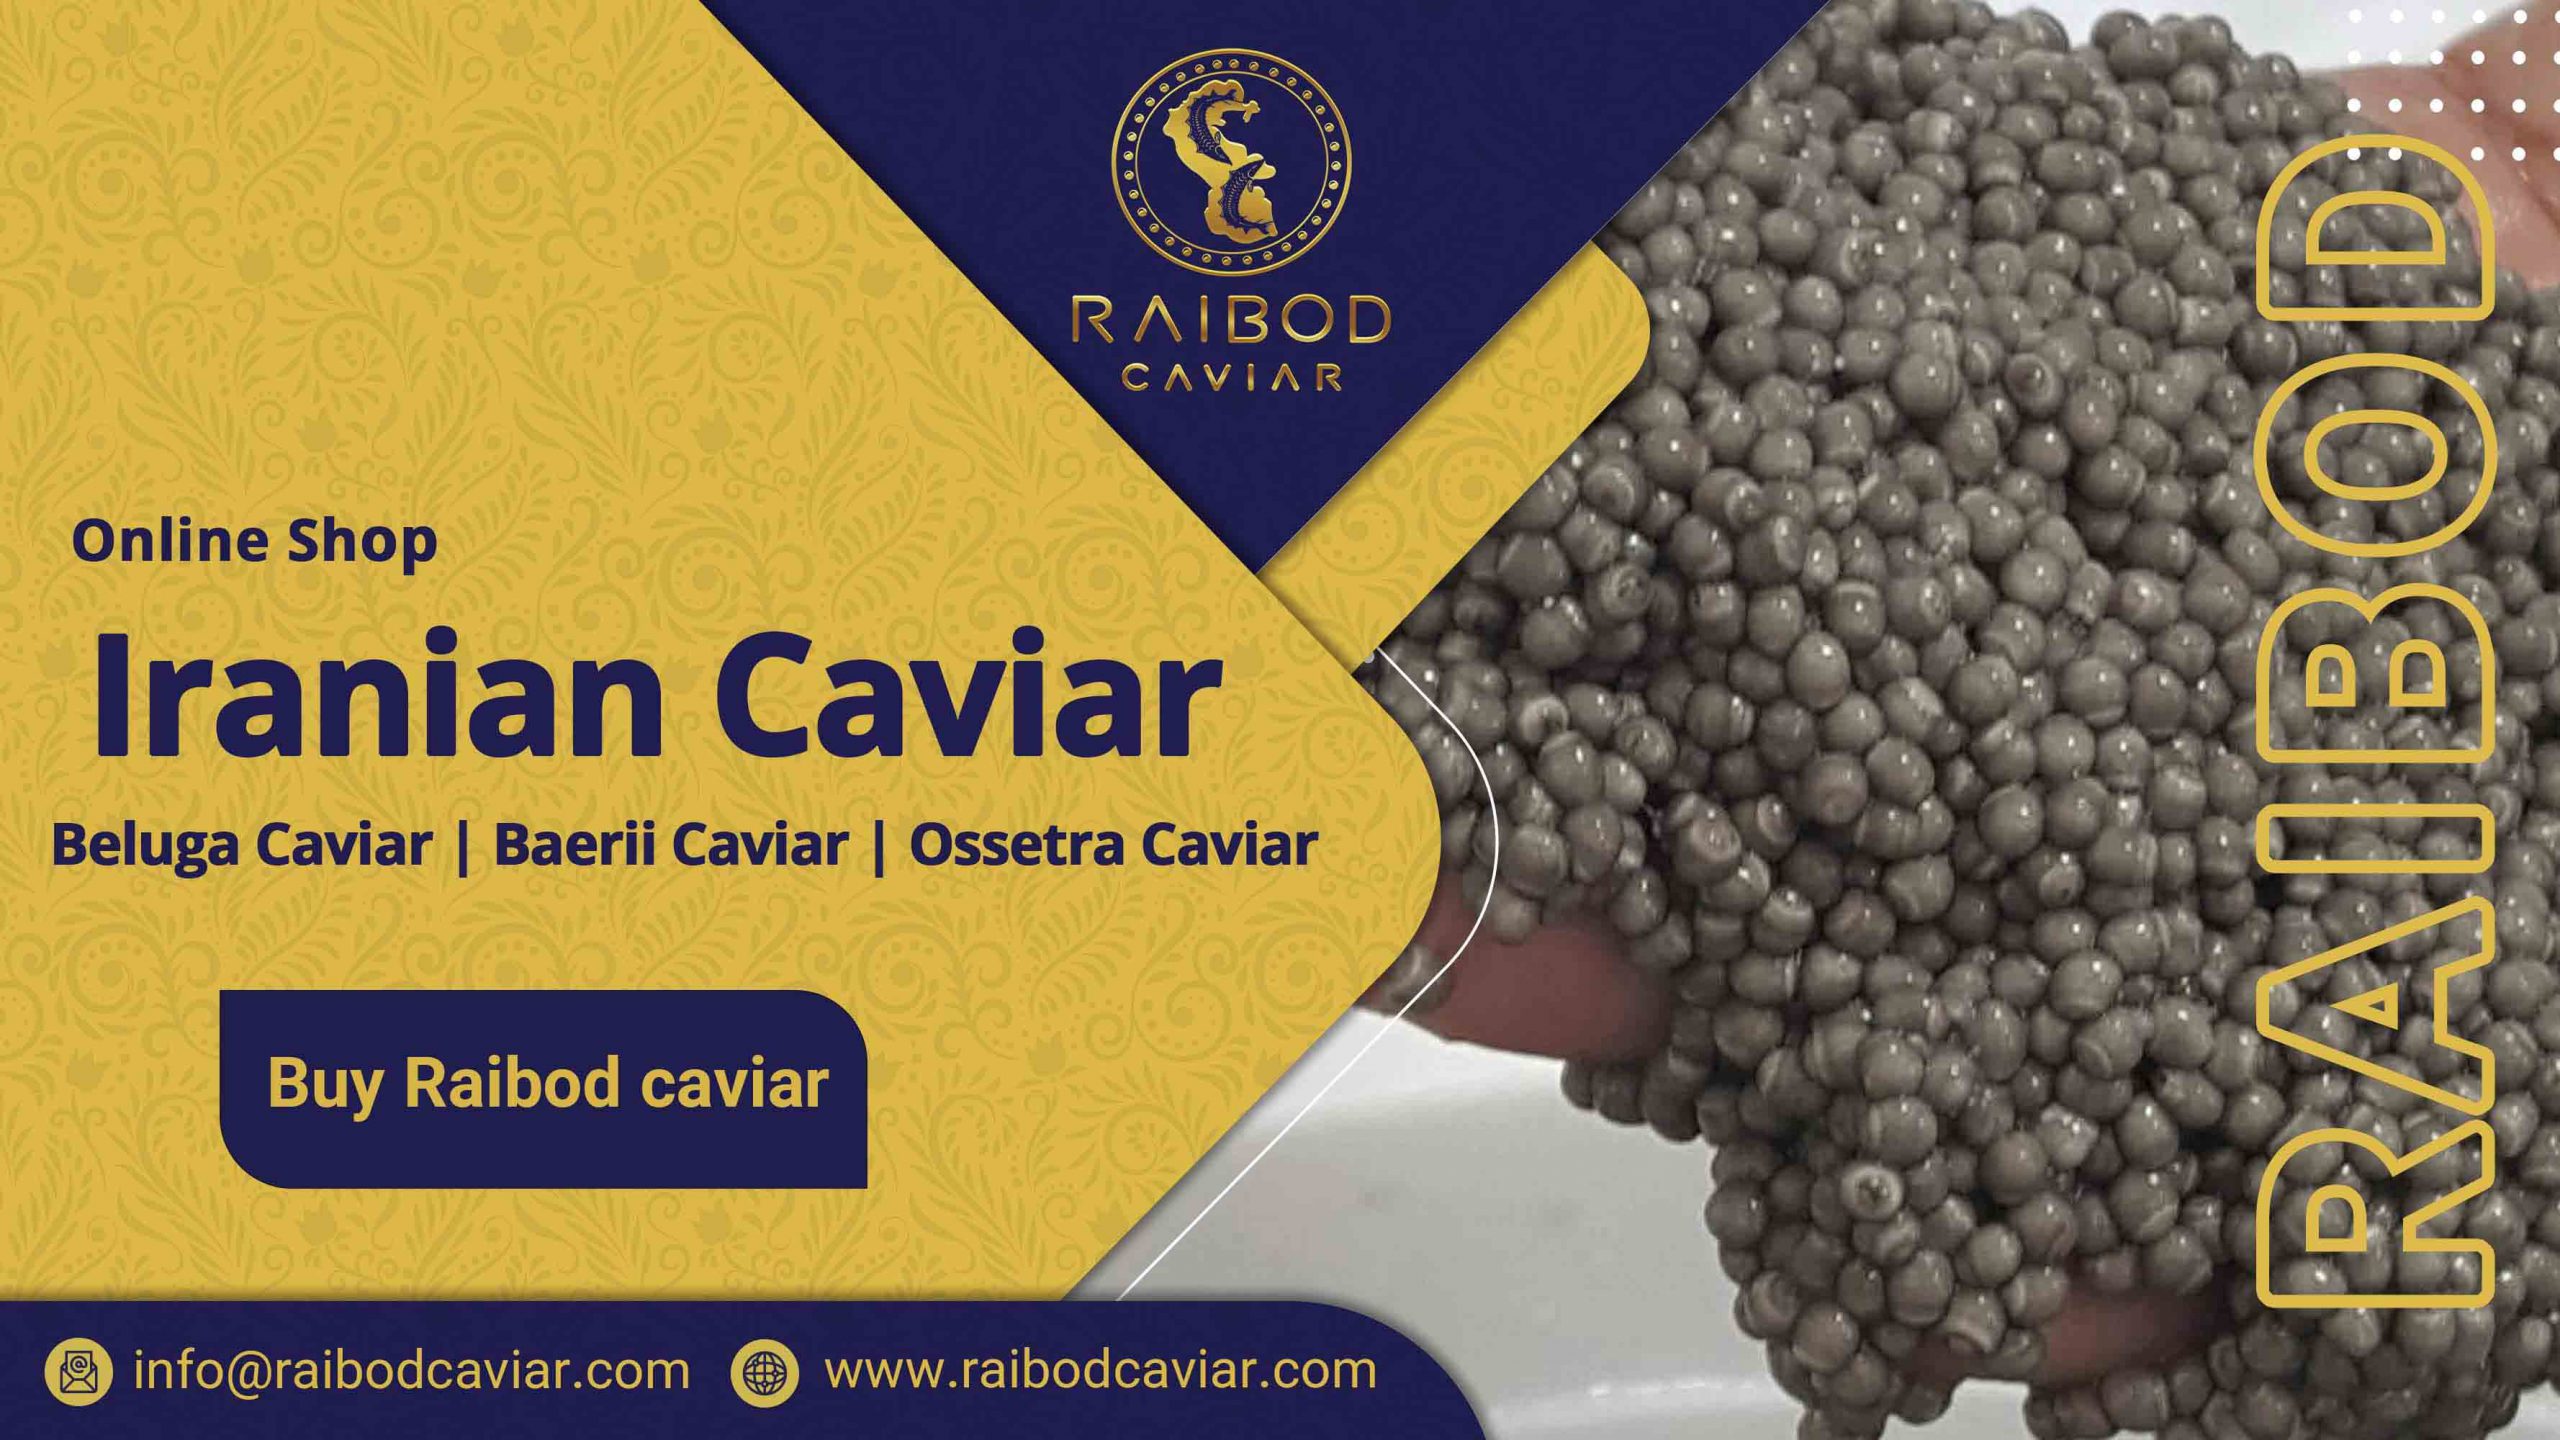 Buy Acipenser baerii caviar